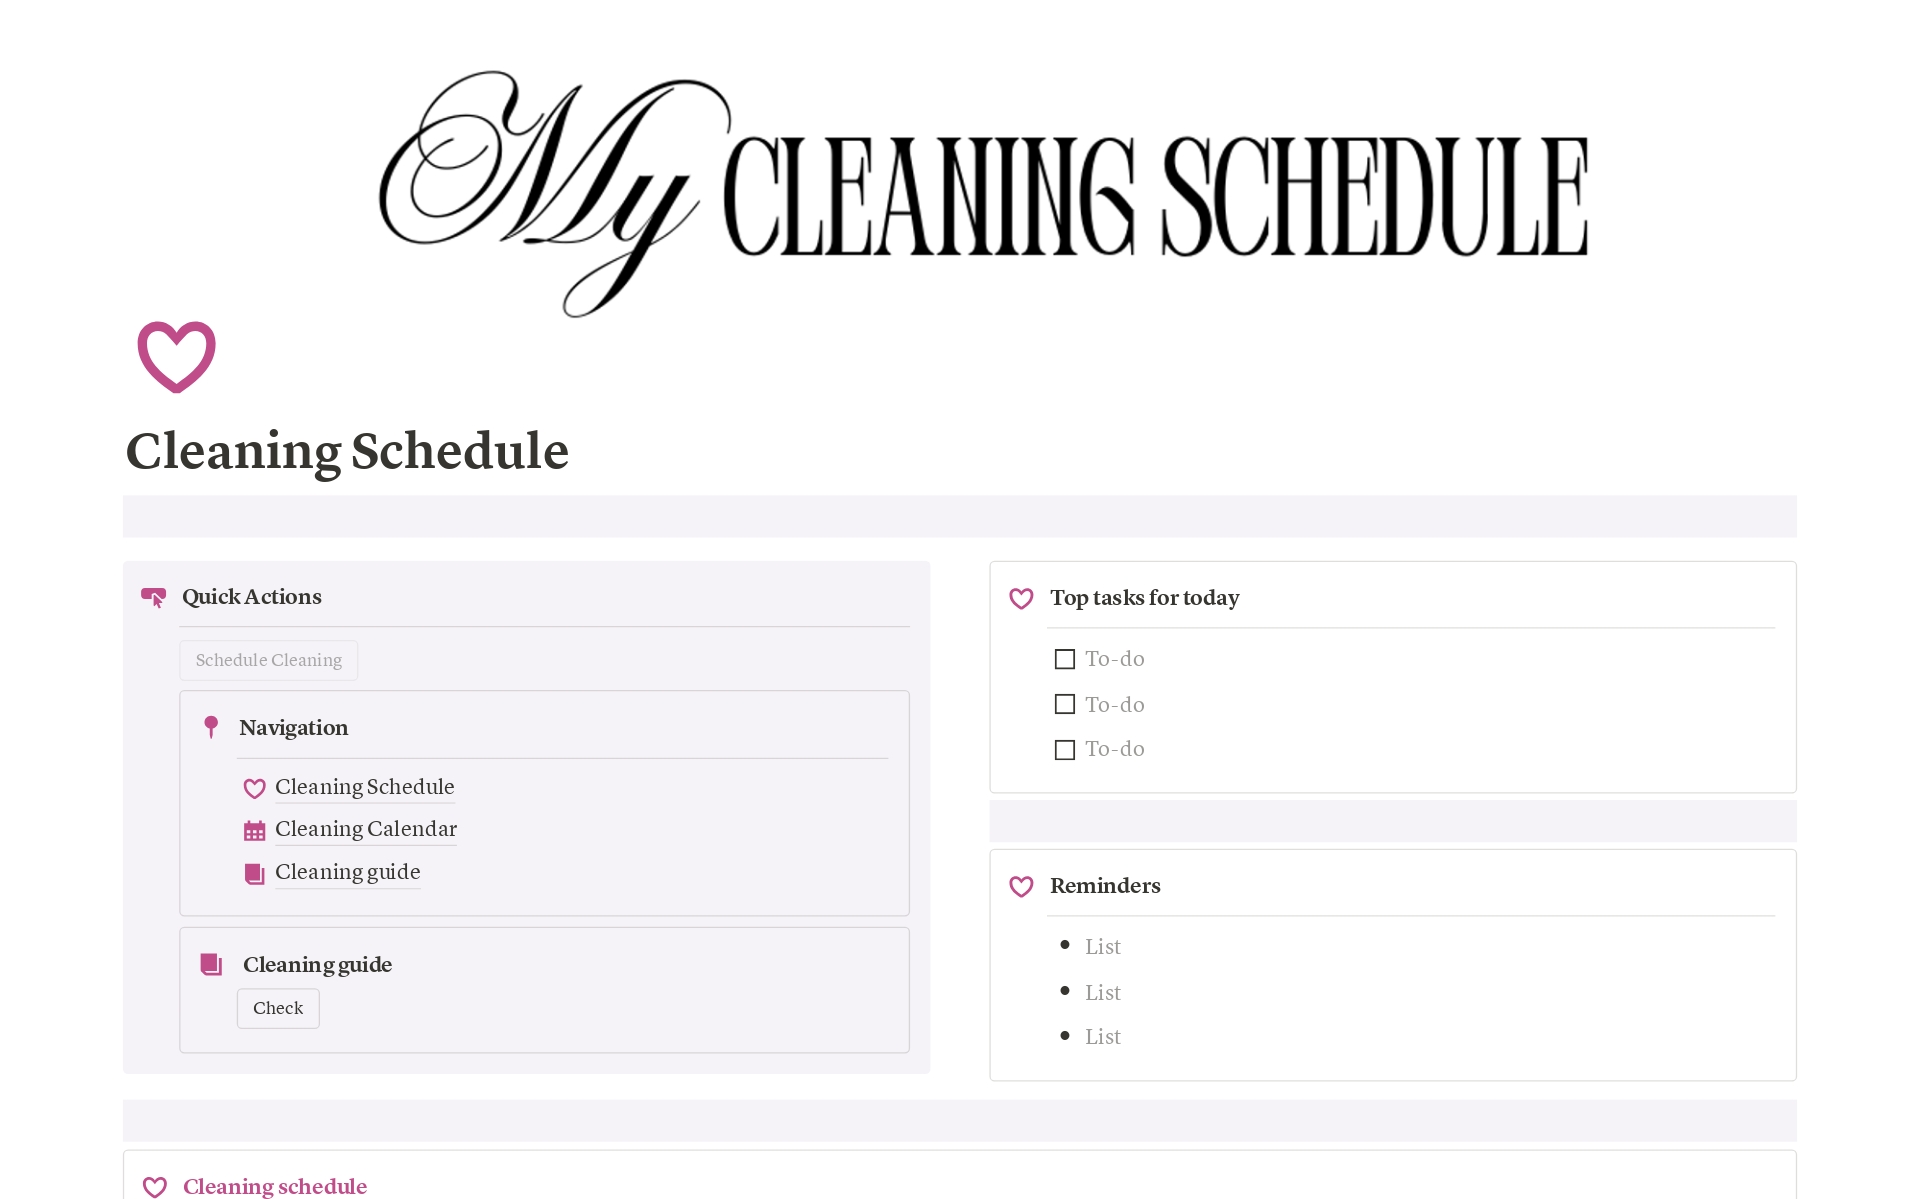 Uma prévia do modelo para Cleaning Schedule 